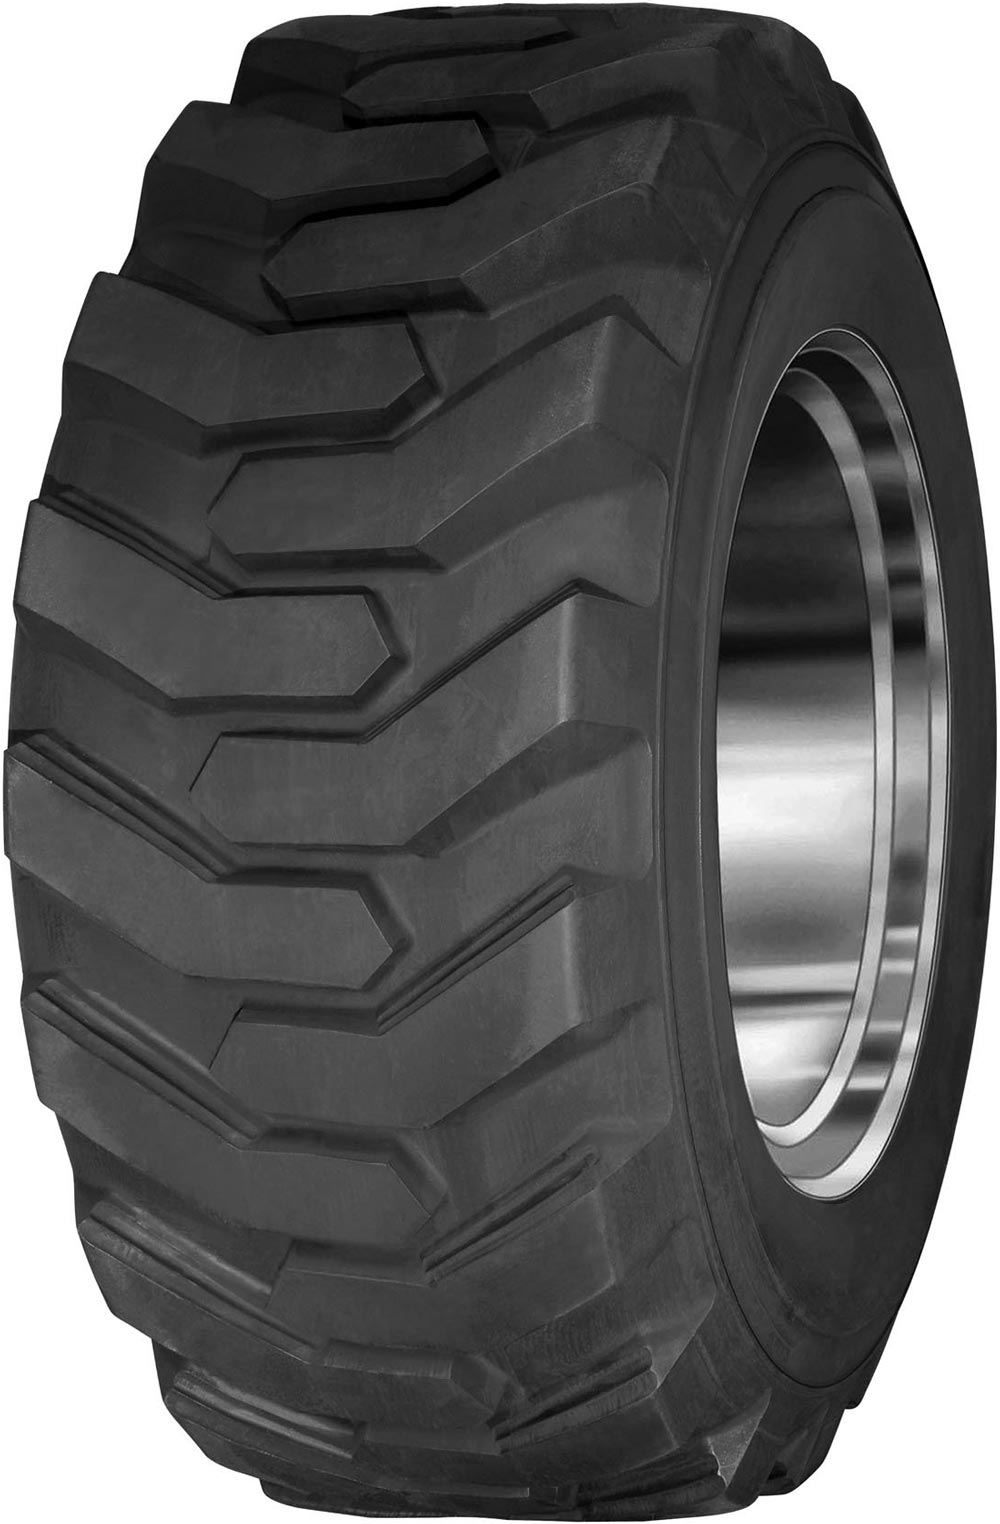 product_type-industrial_tires CULTOR SKID STEER 20 10PR TL 12 R16.5 P